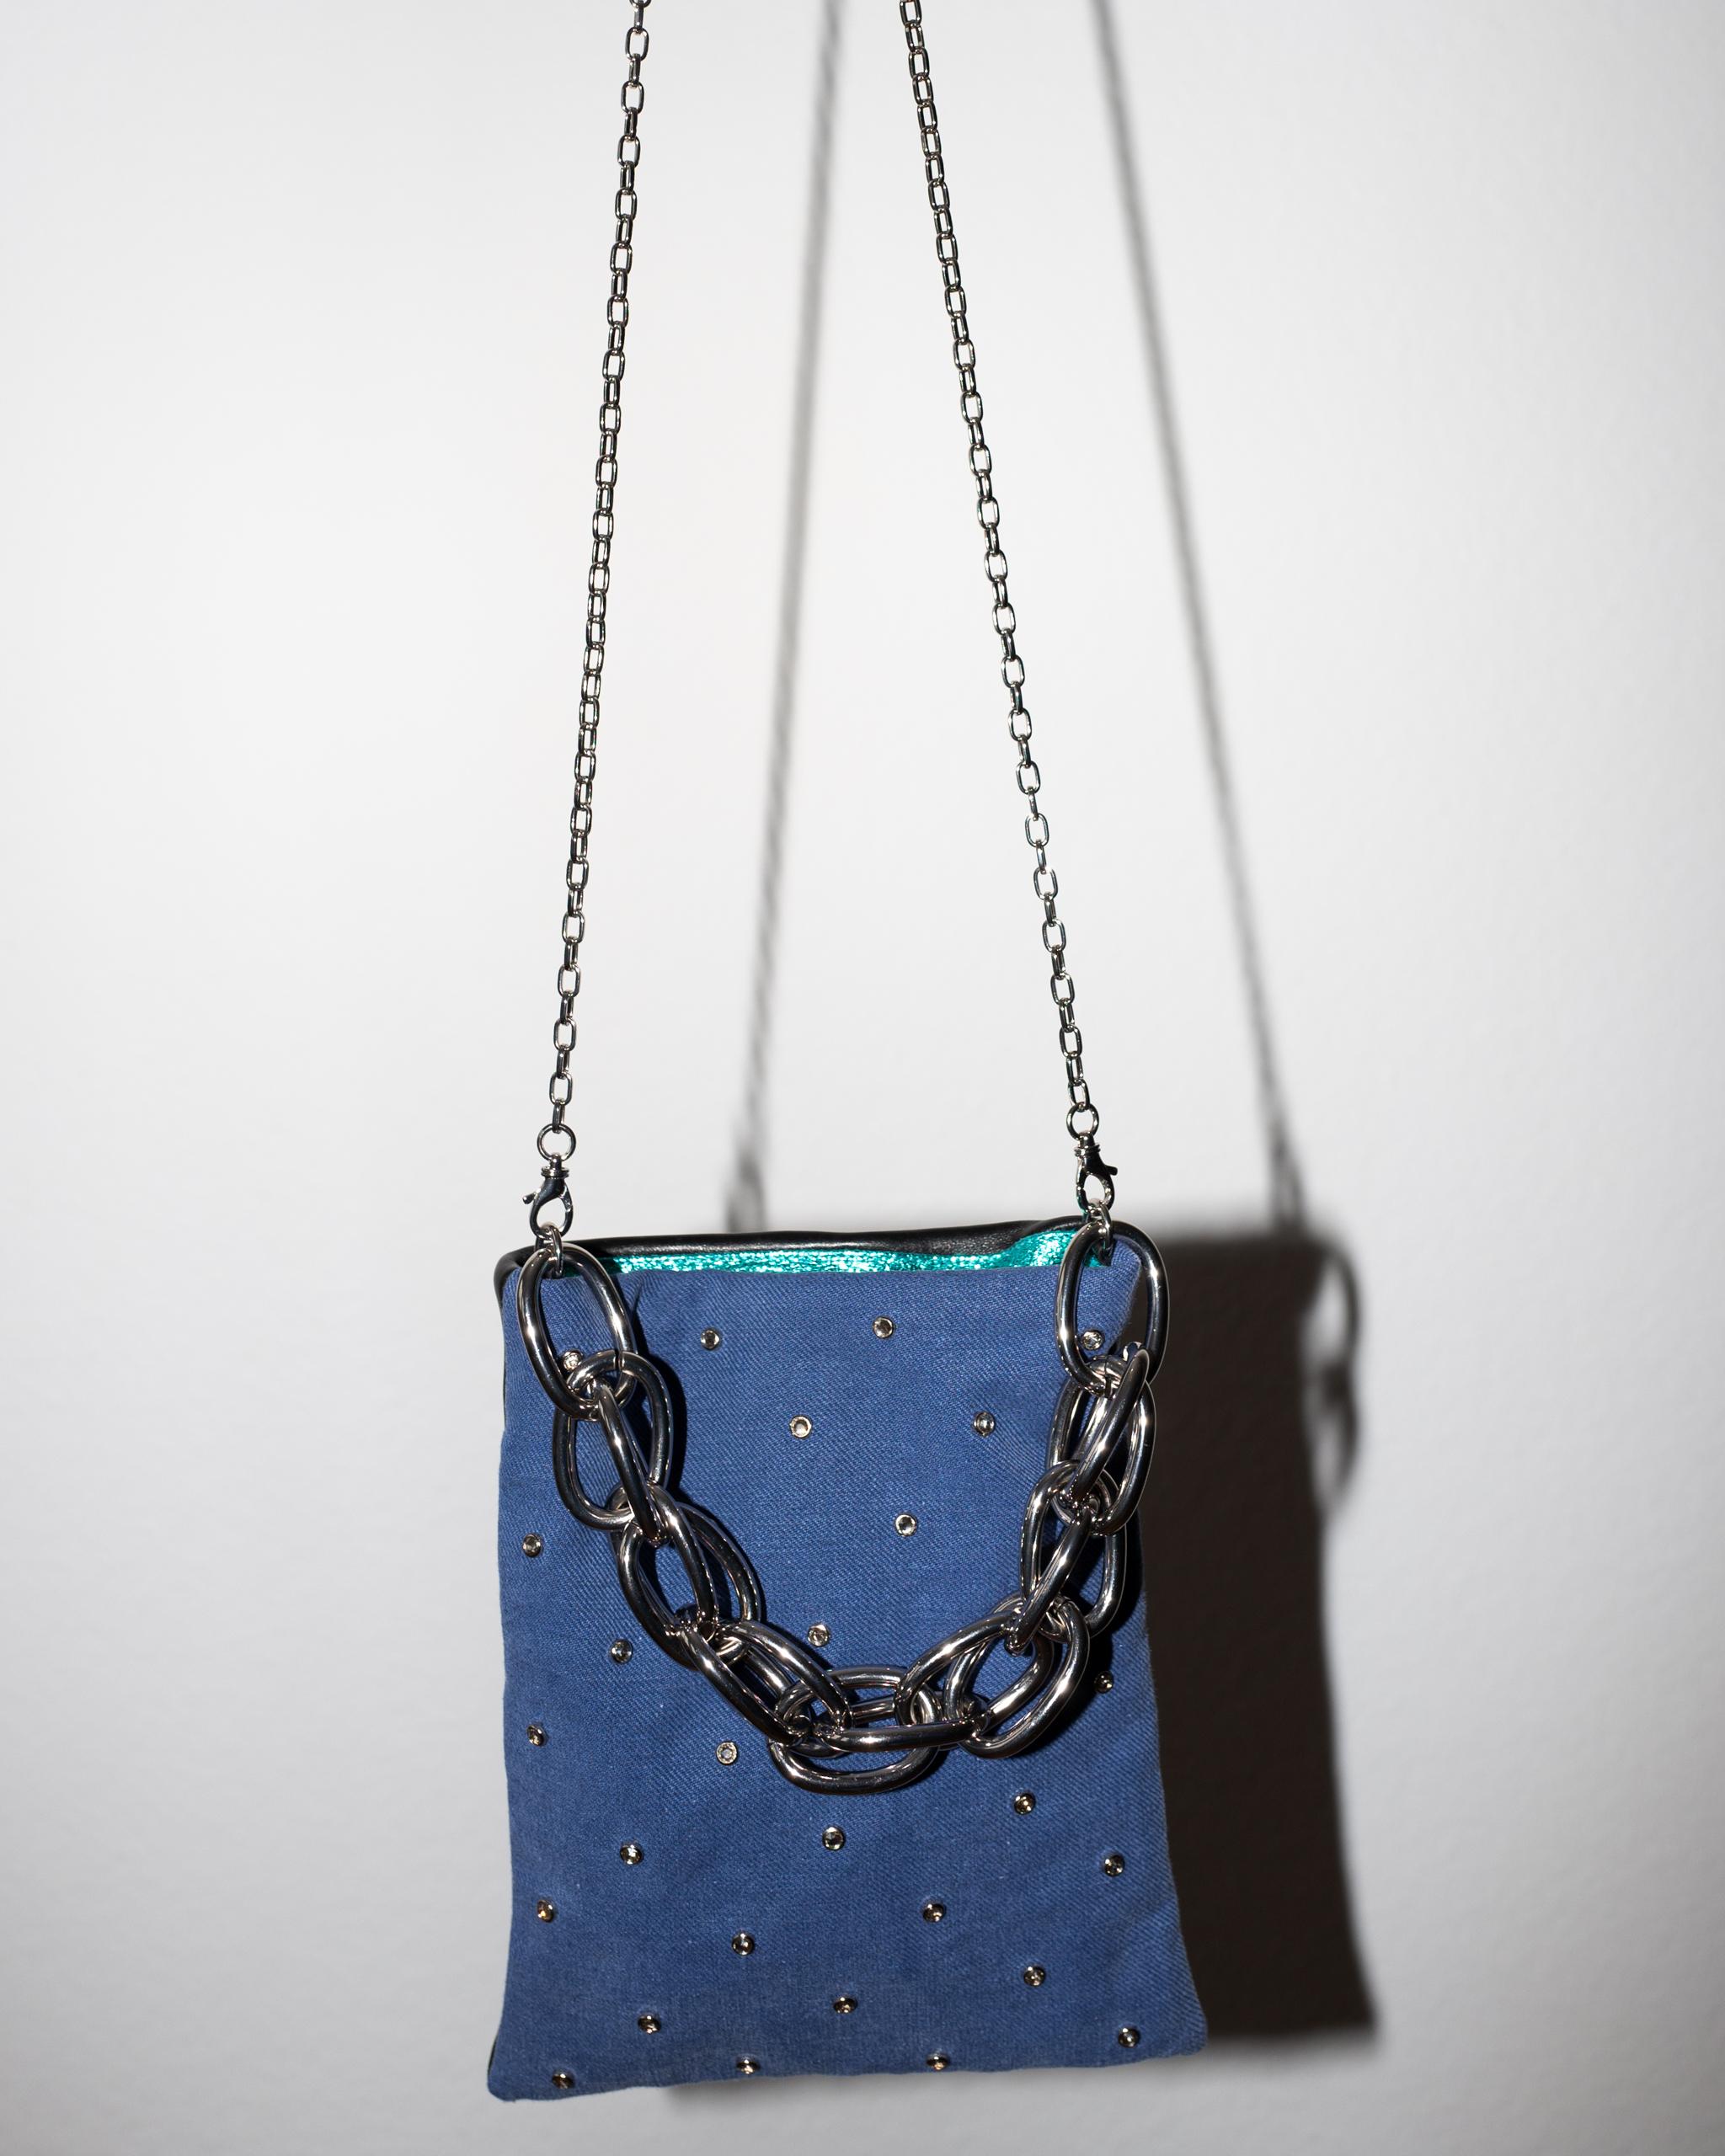 Crystal Embellished Blue Evening Shoulder Bag Black Leather Chunky Chain For Sale 2